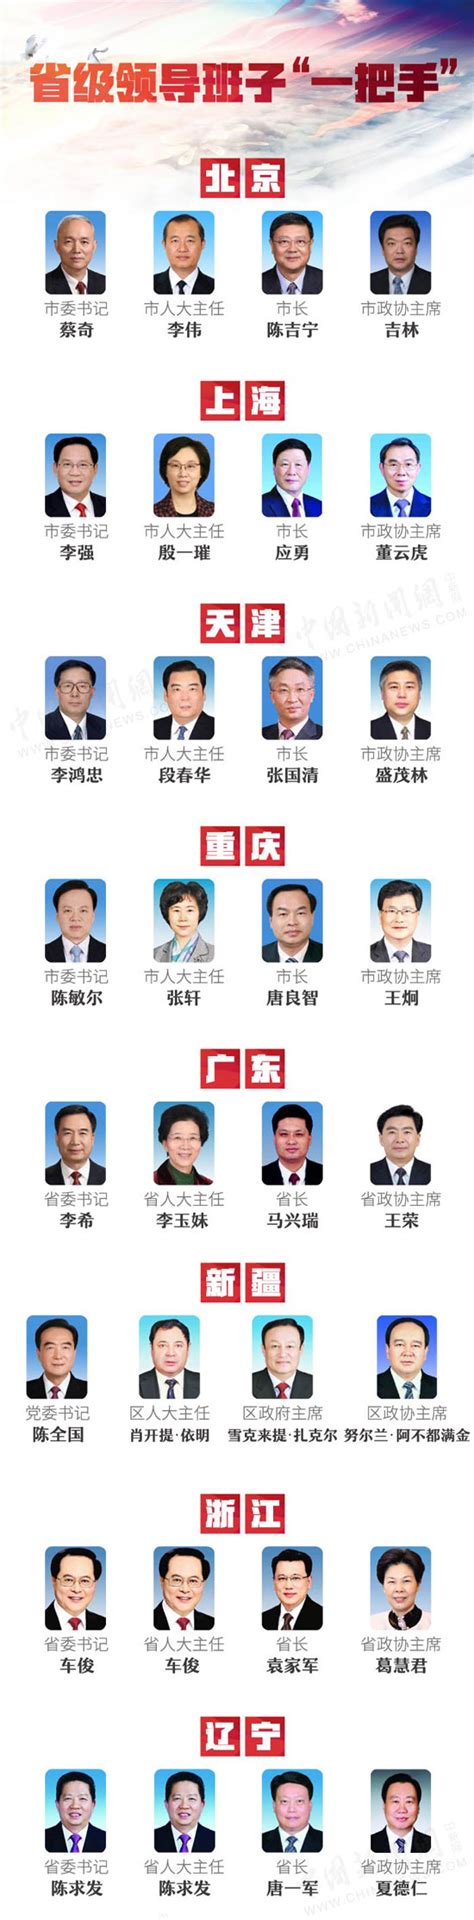 广州常委公示名单